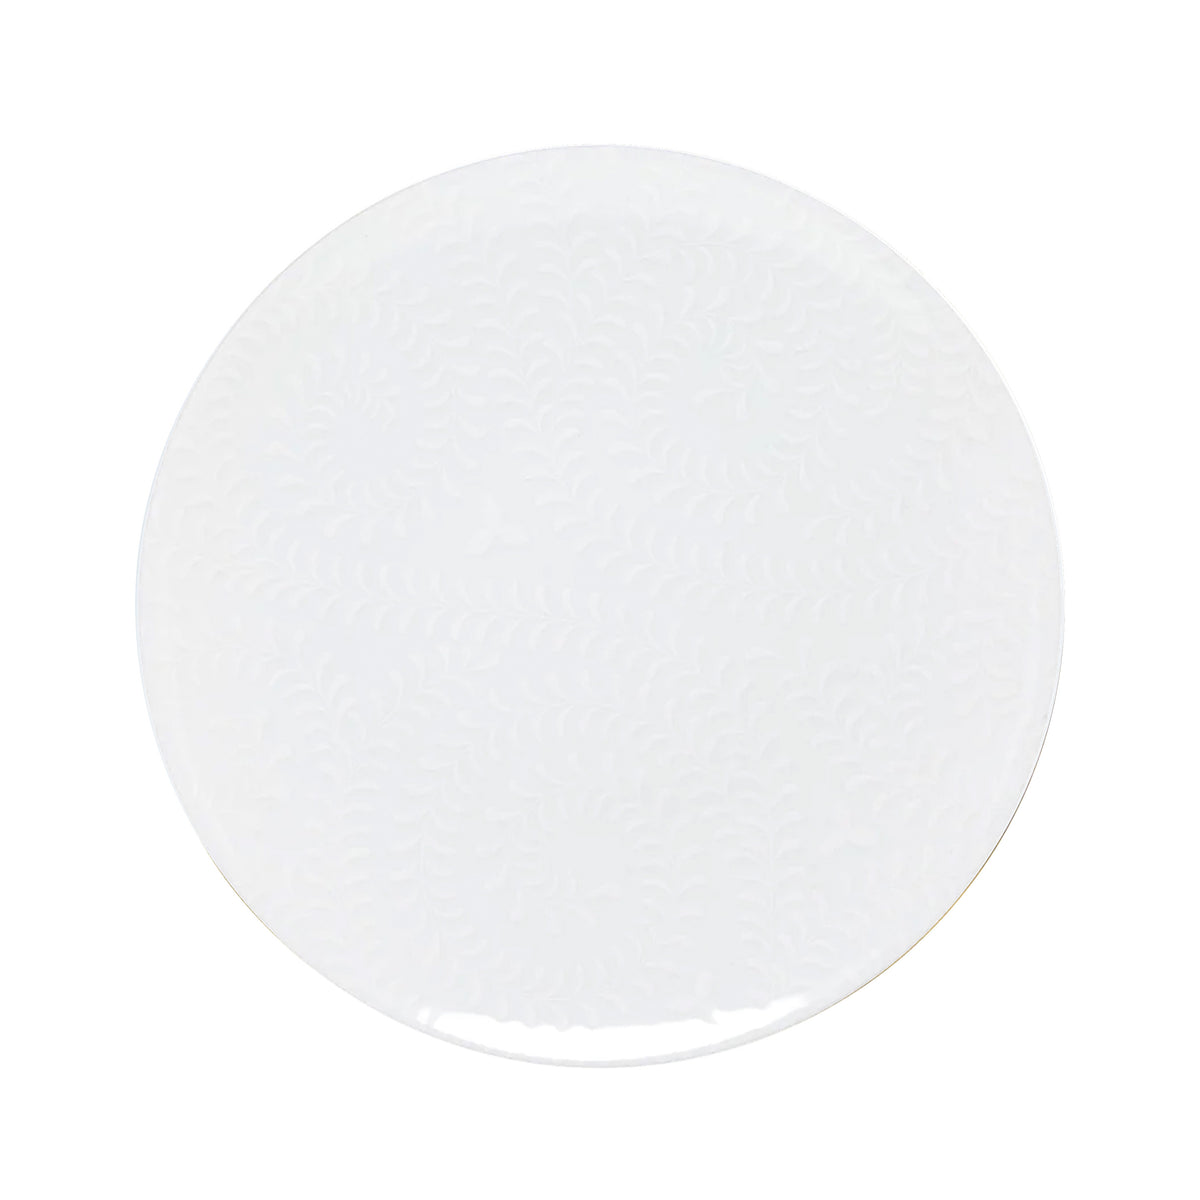 ARJUNA blanc sur blanc - Assiette plate